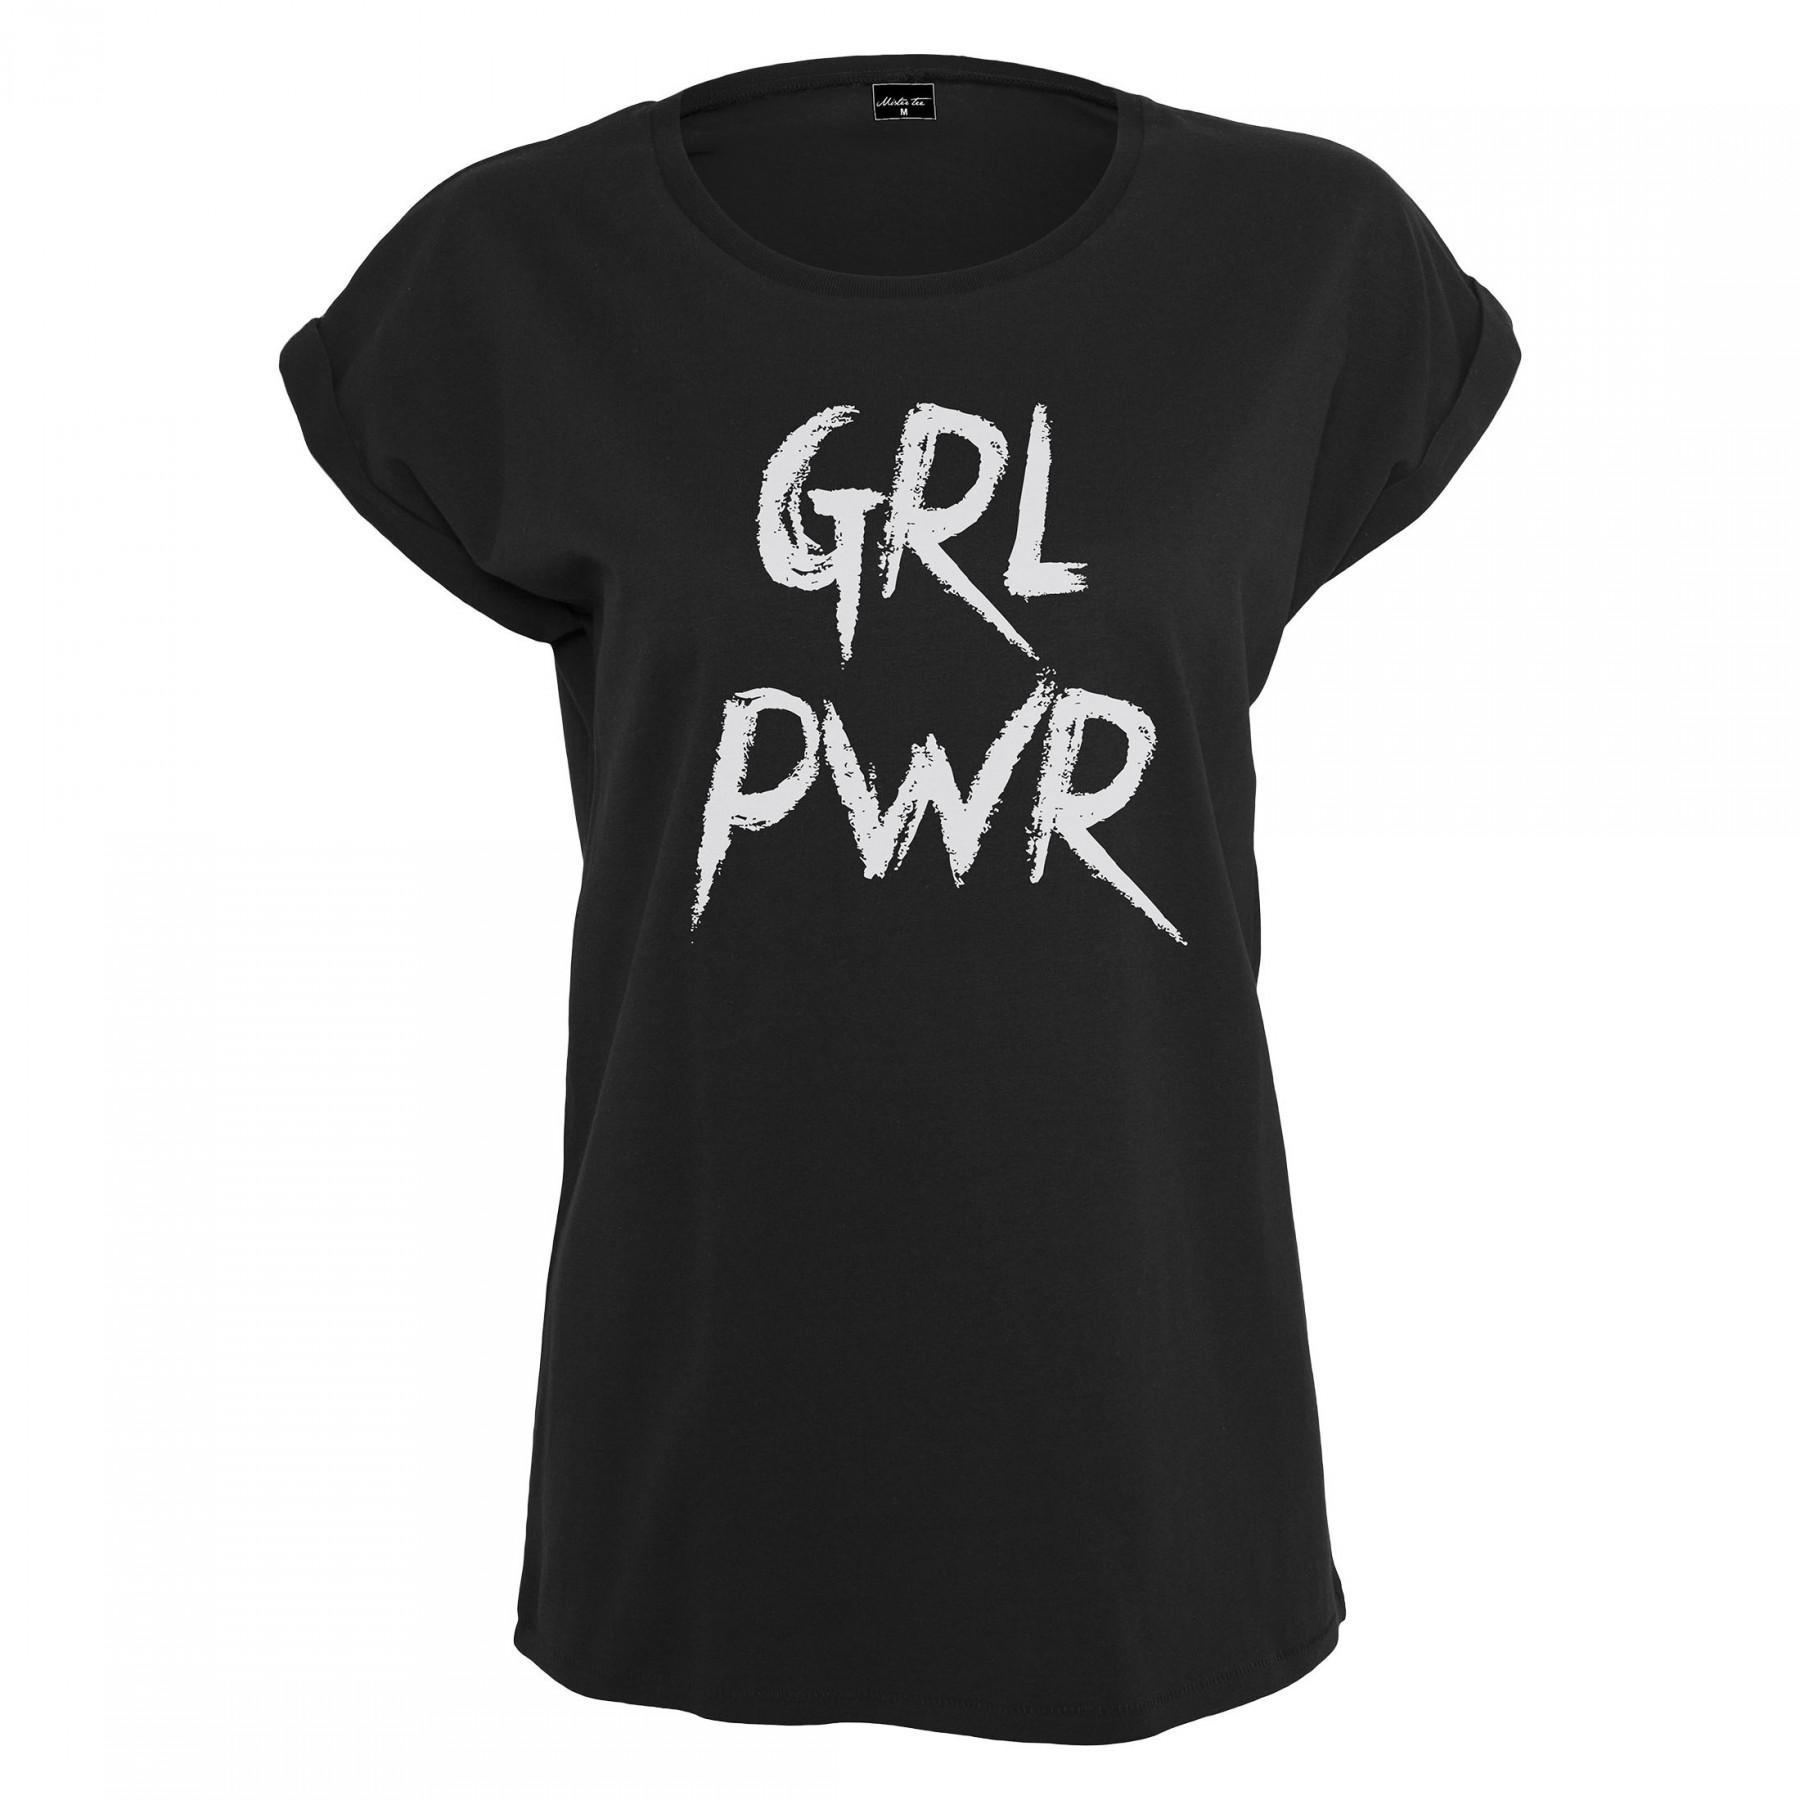 T-shirt mulher Mister Tee girl power